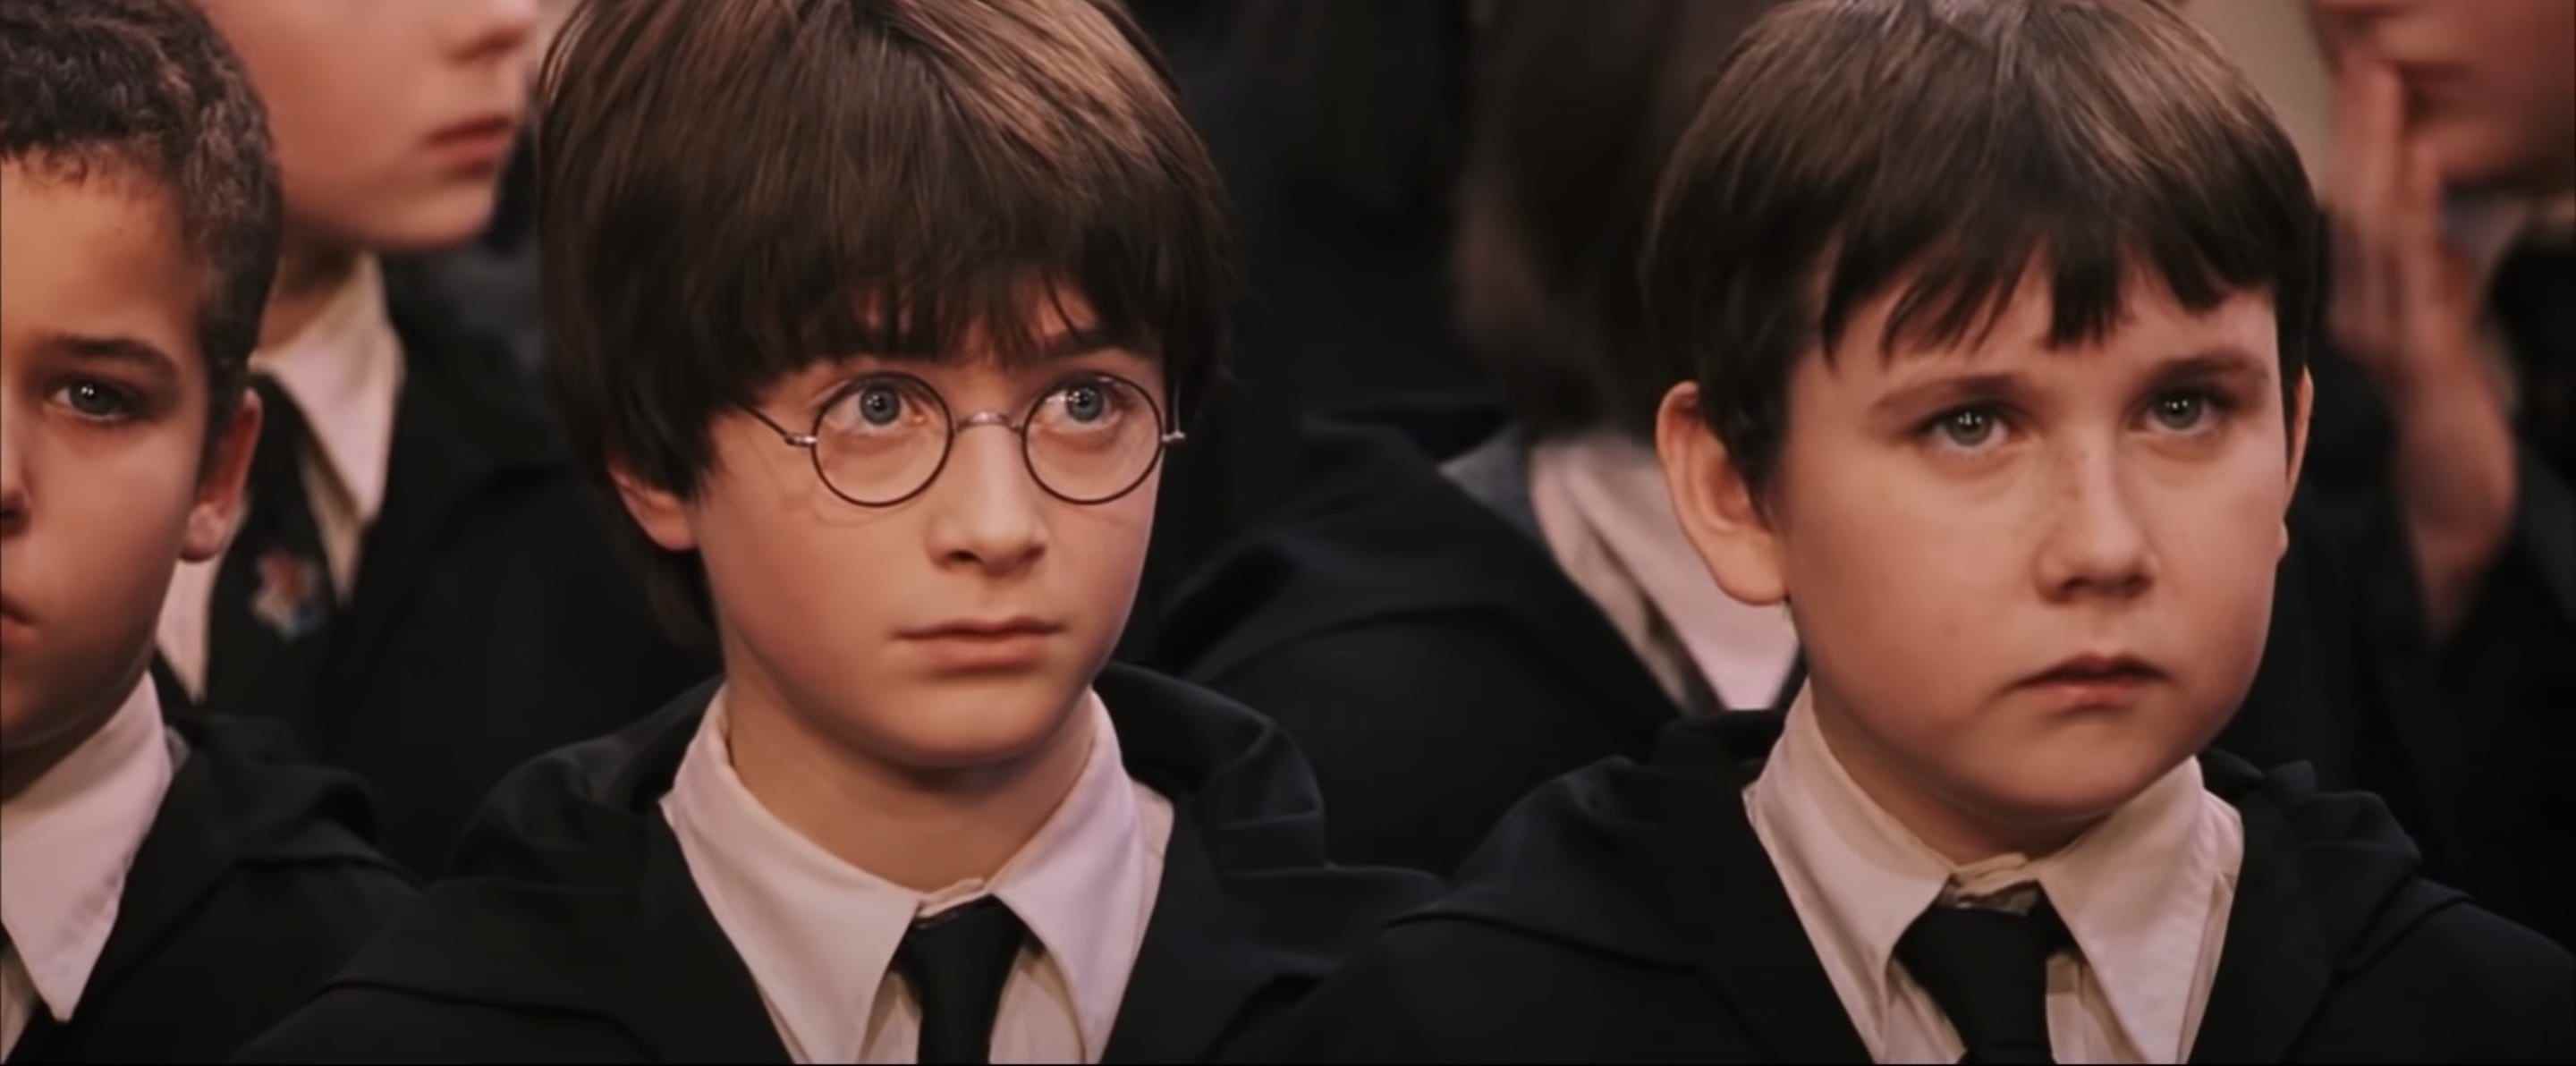 Daniel Radcliffe als Harry Potter und Matthew Lewis als Neville Longbottom in „Harry Potter und der Stein der Weisen“.